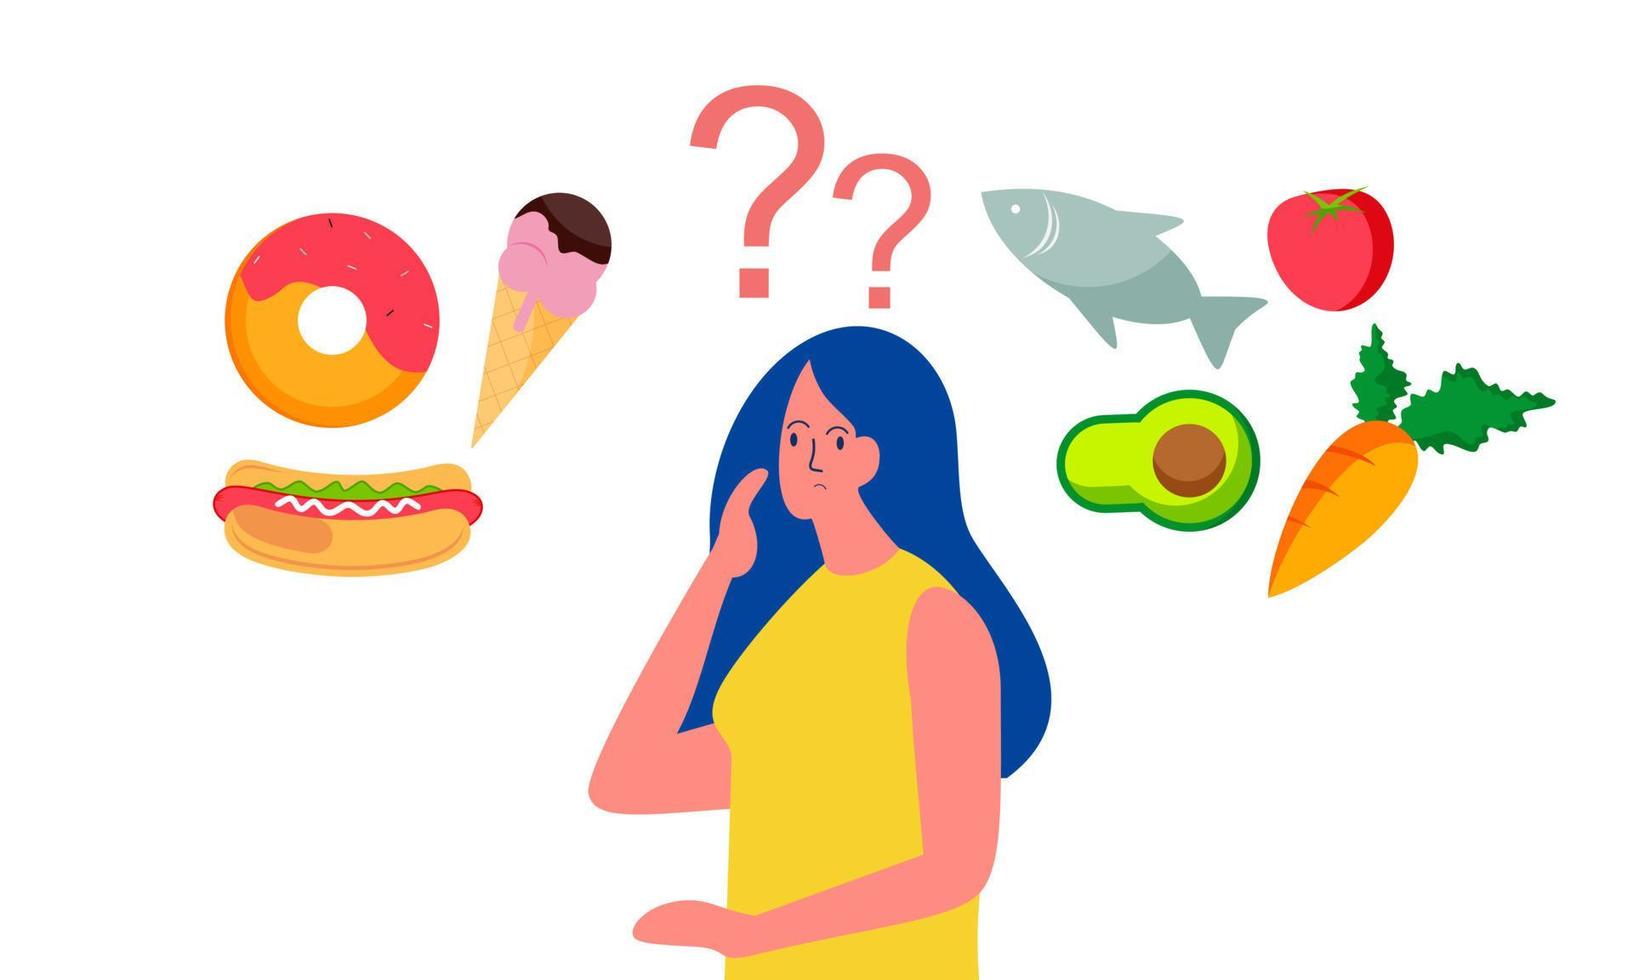 mulher escolhendo entre ilustração de conceito de comida saudável e não saudável vetor